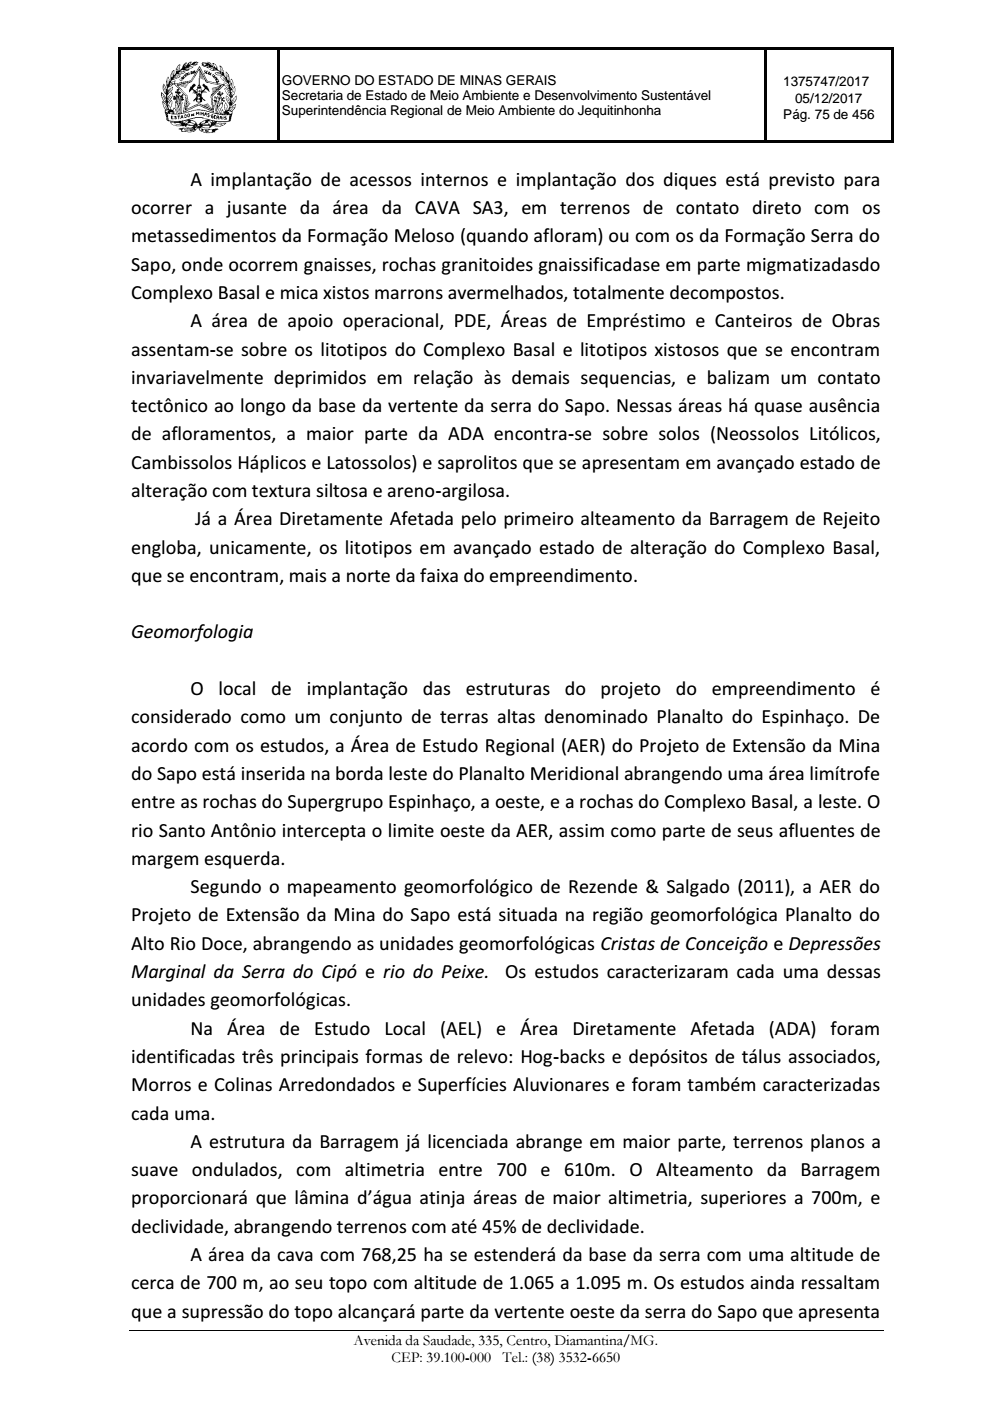 Page 75 from Parecer único da Secretaria de estado de Meio Ambiente e Desenvolvimento Sustentável (SEMAD)